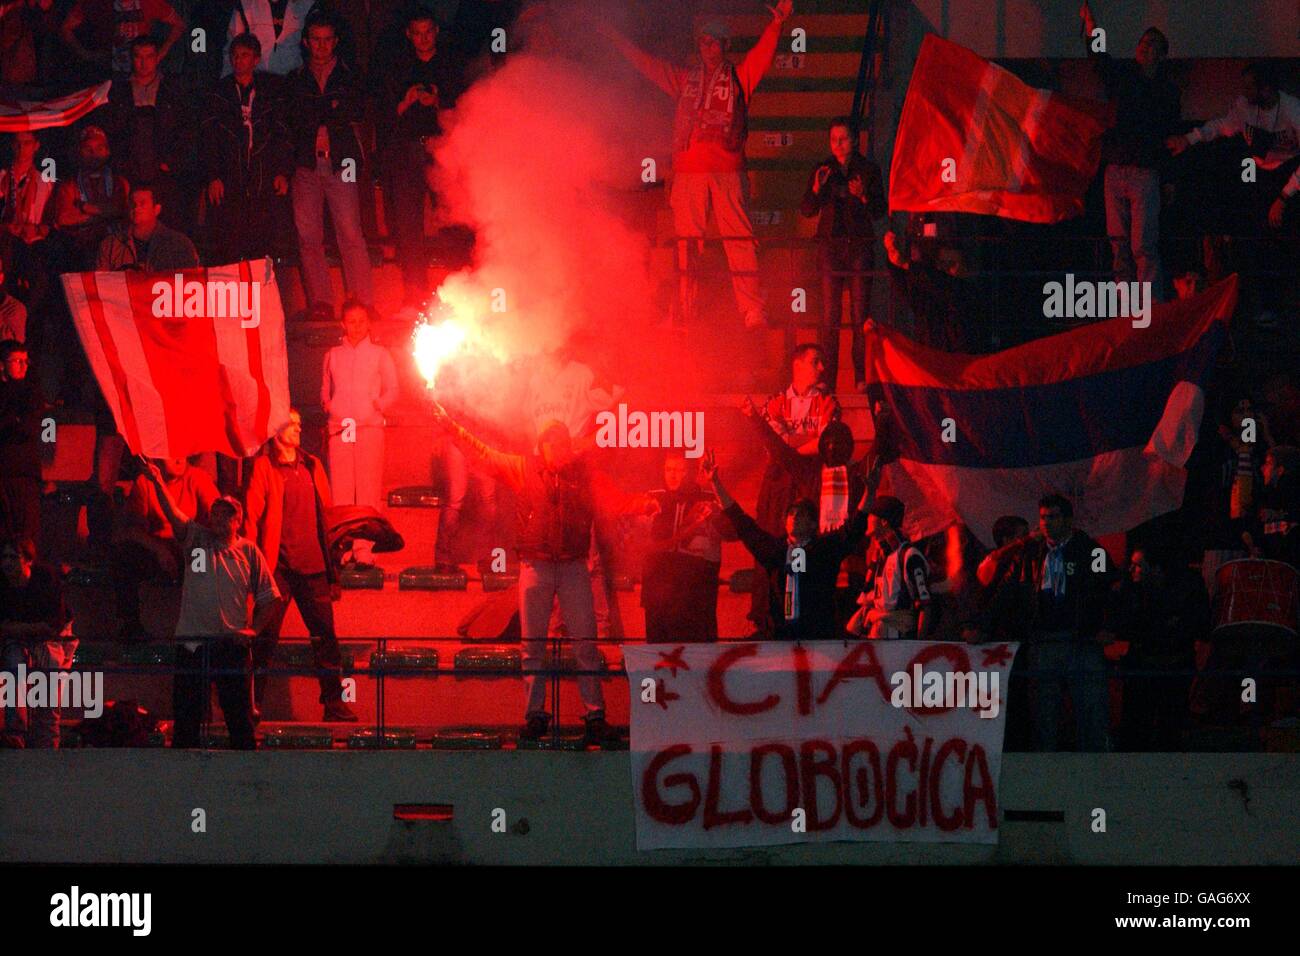 FK Crvena zvezda Fans